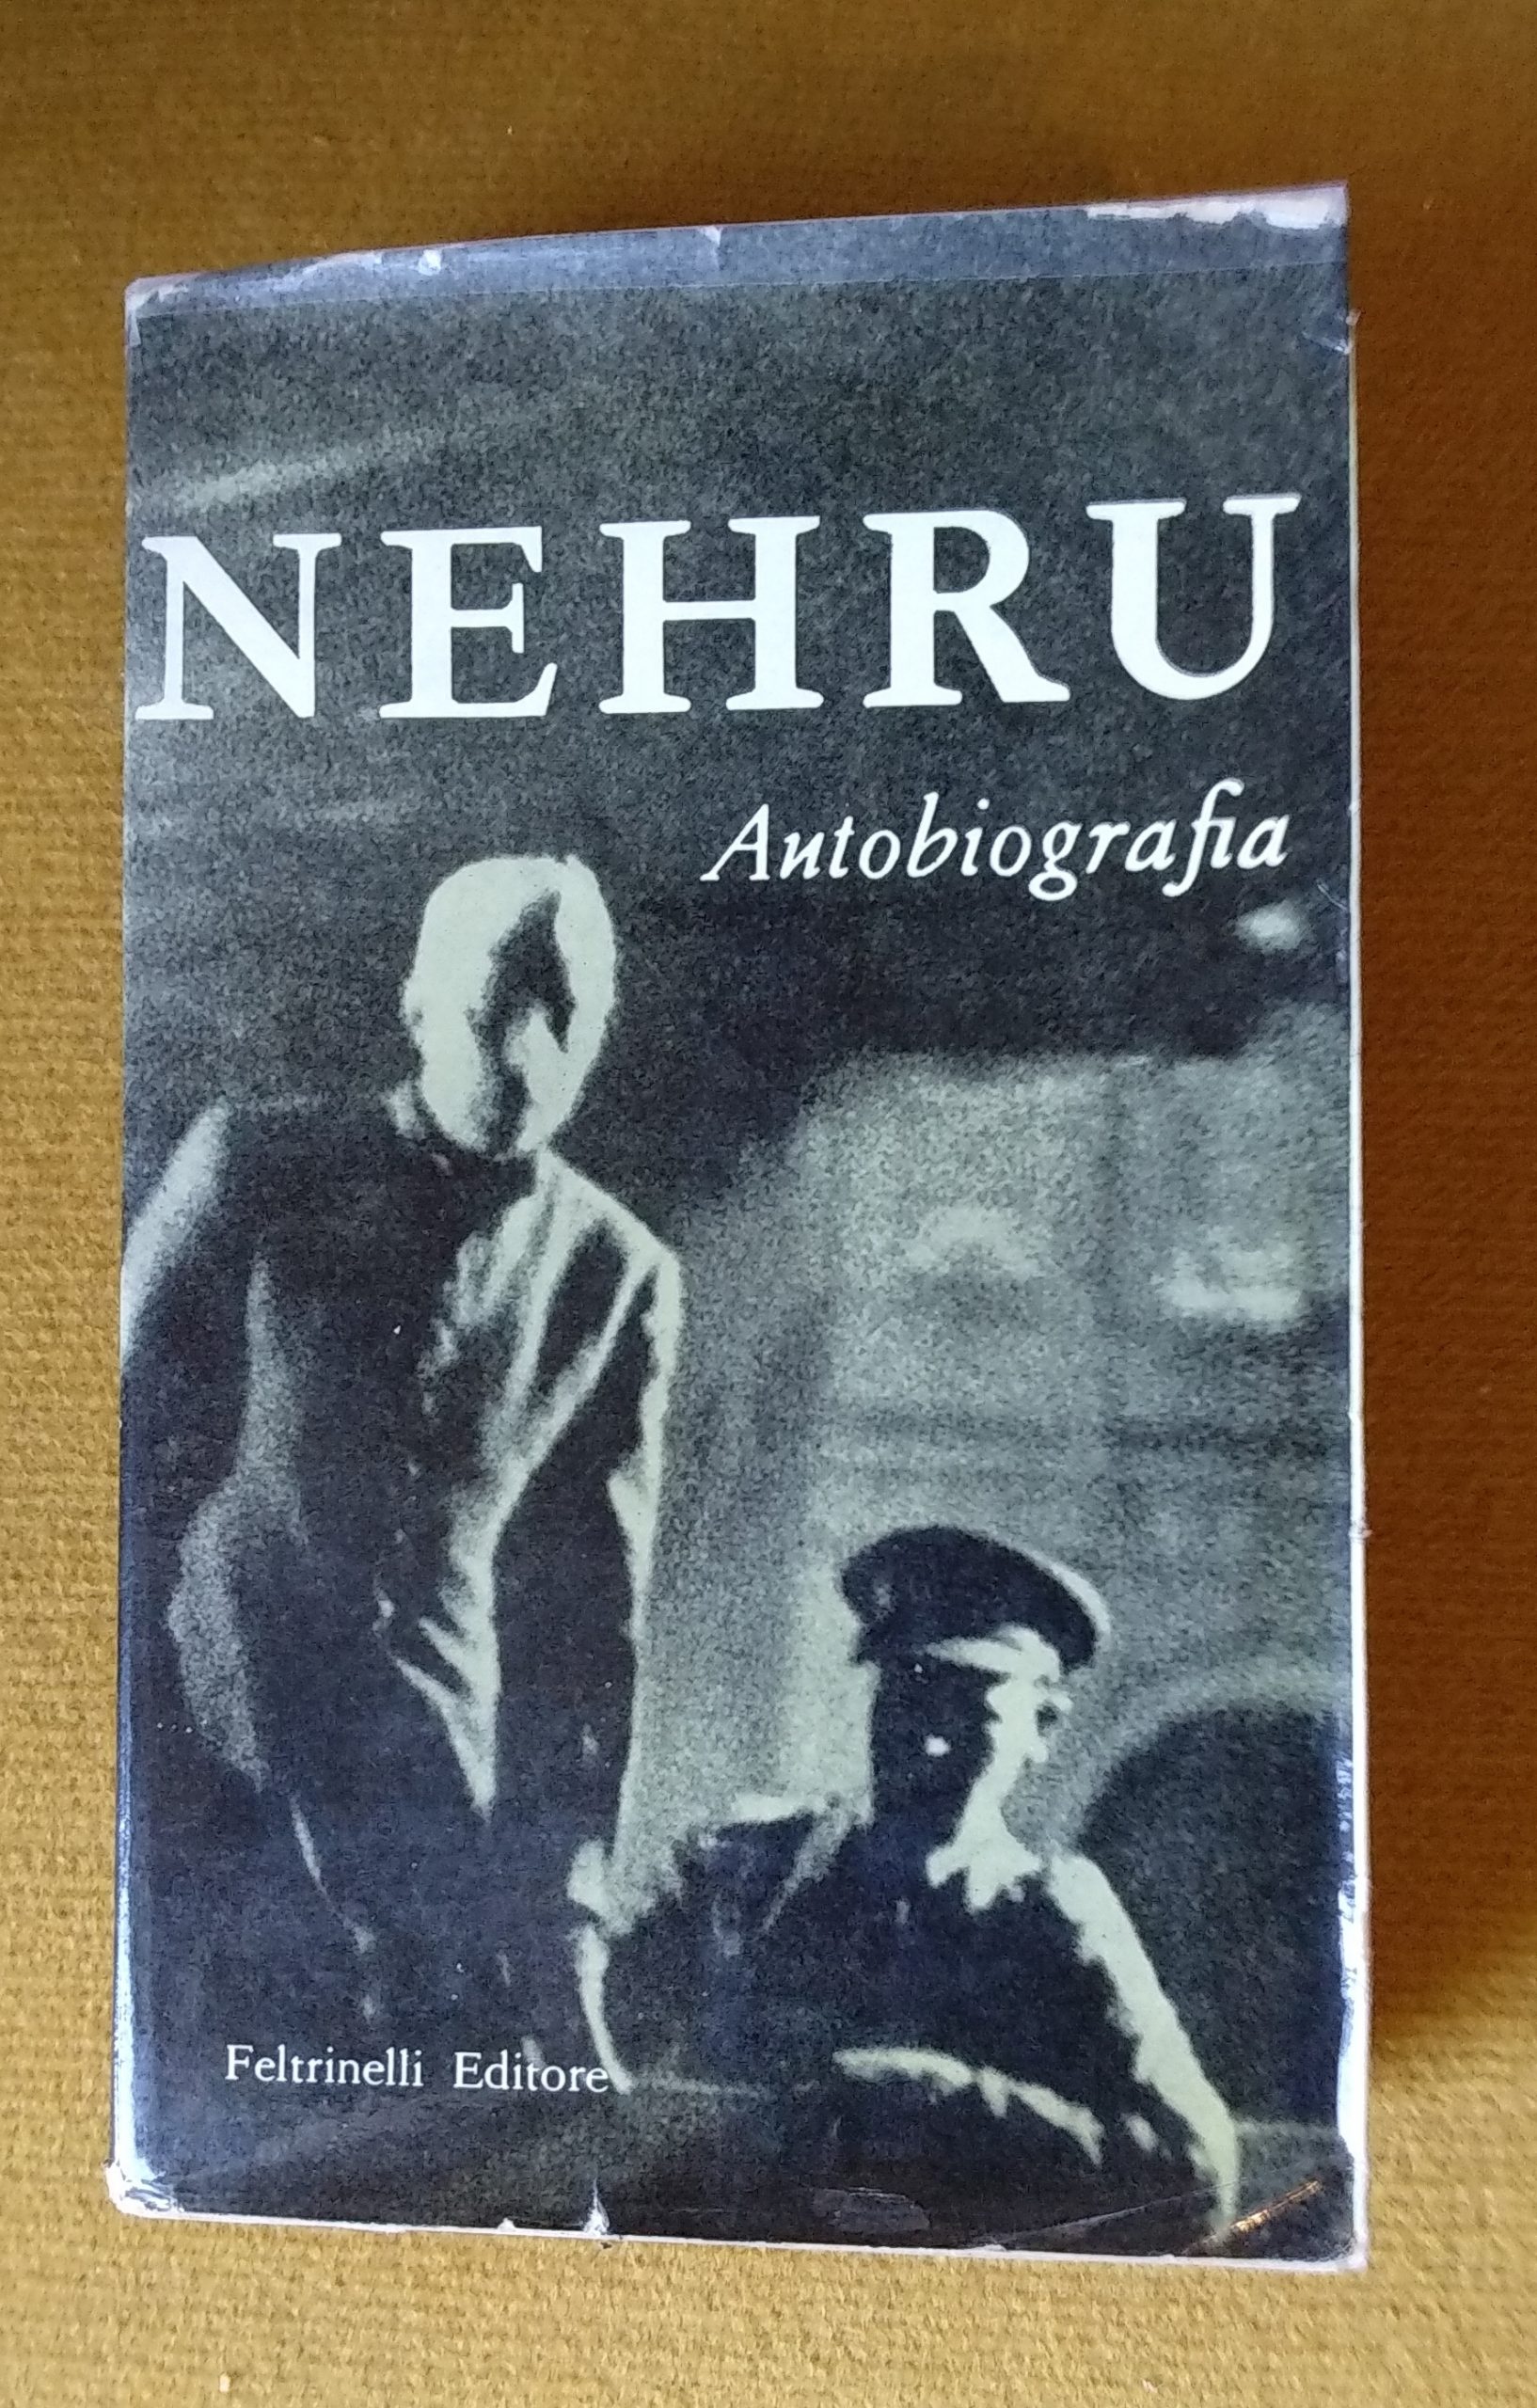 Il primo libro dell’editore Giangiacomo Feltrinelli e della sua casa editrice: “Nehru: autobiografia” (1955)